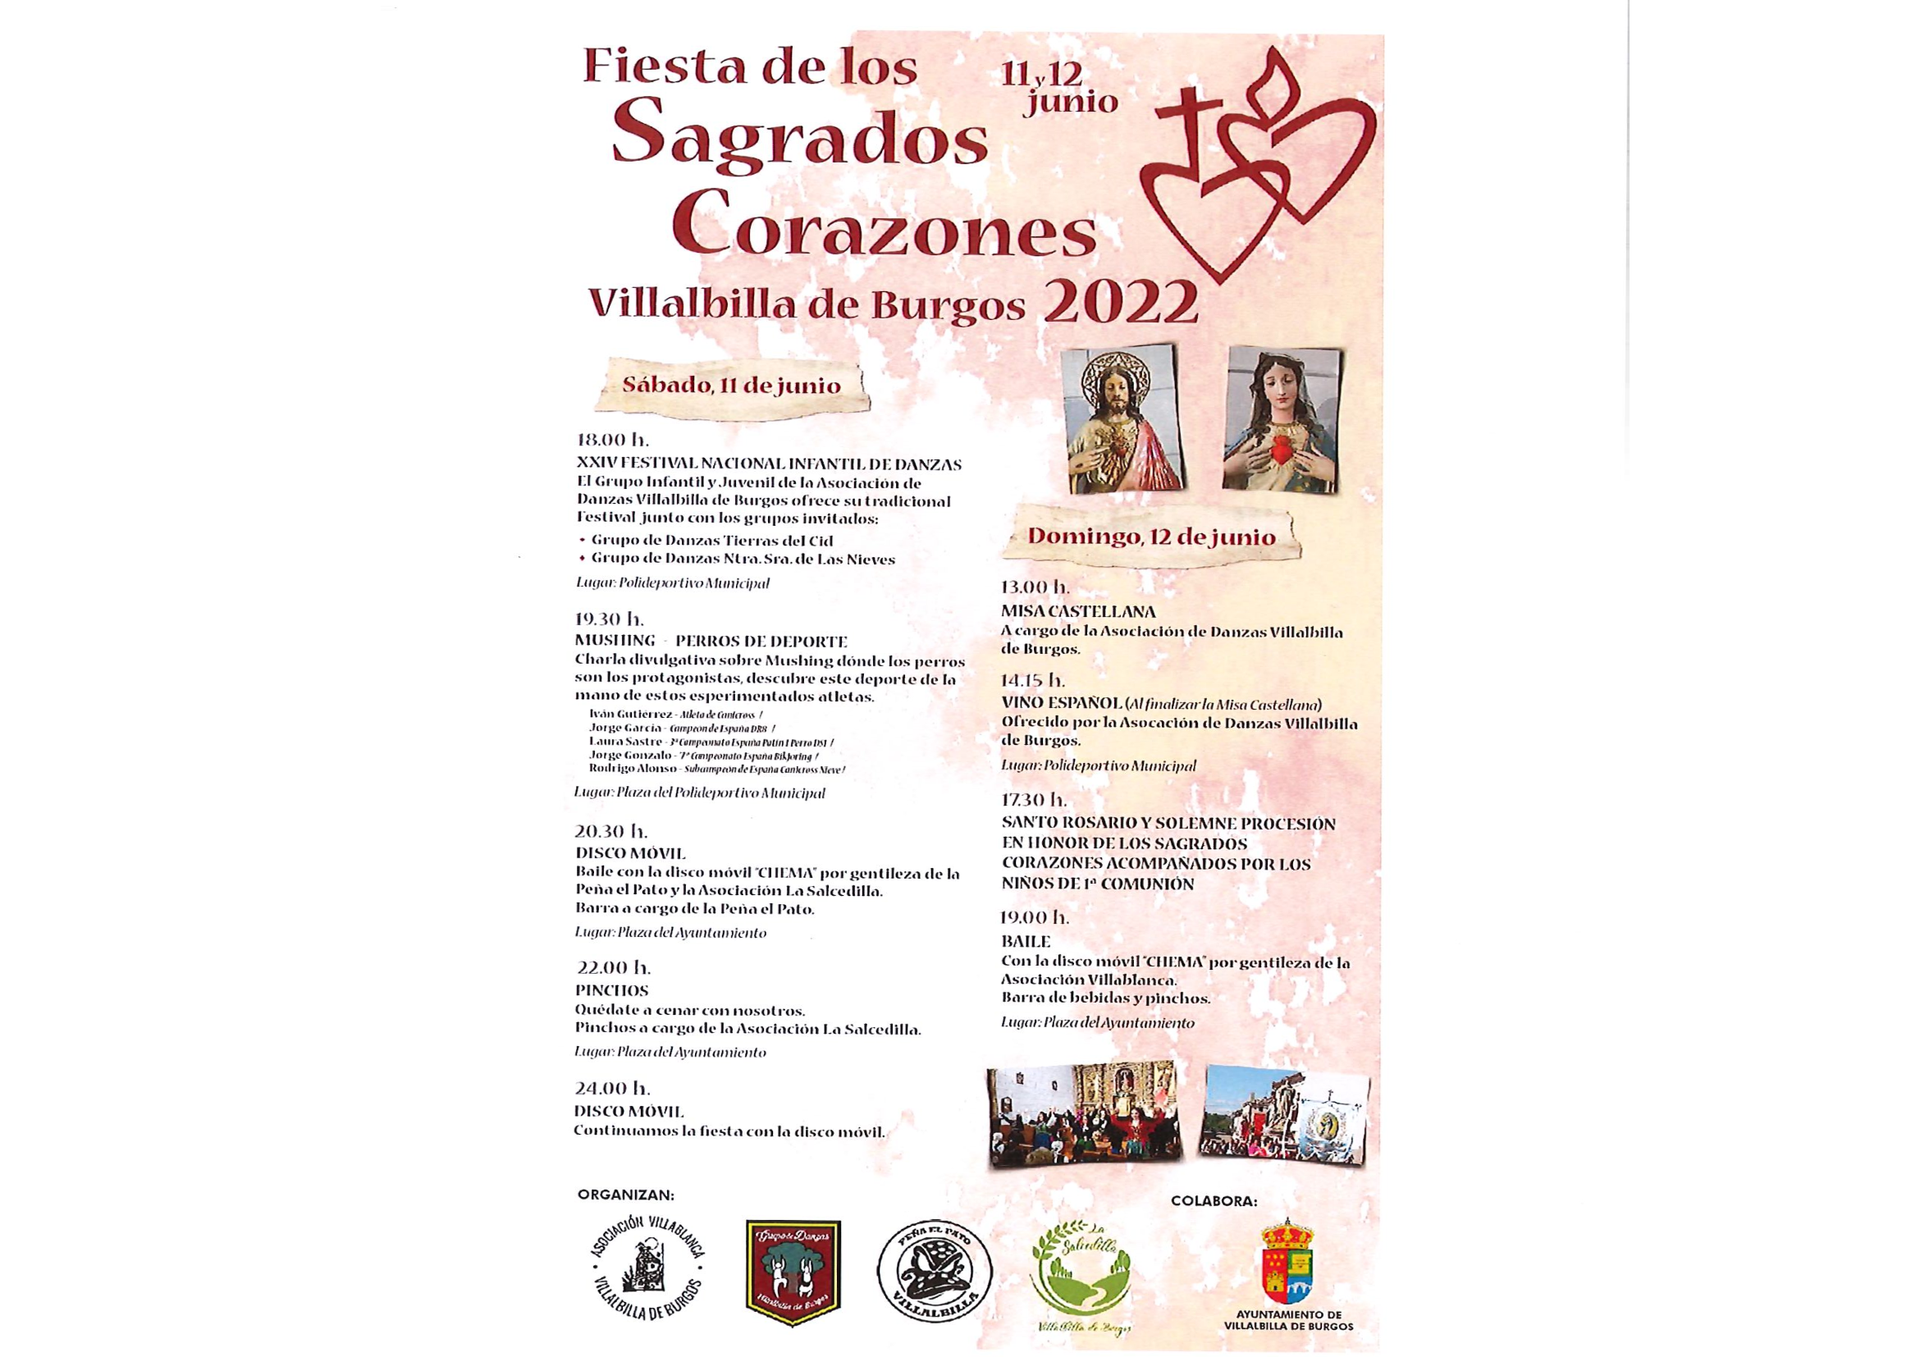 FIESTA DE LOS SAGRADOS CORAZONES 11 Y 12 JUNIO 2022